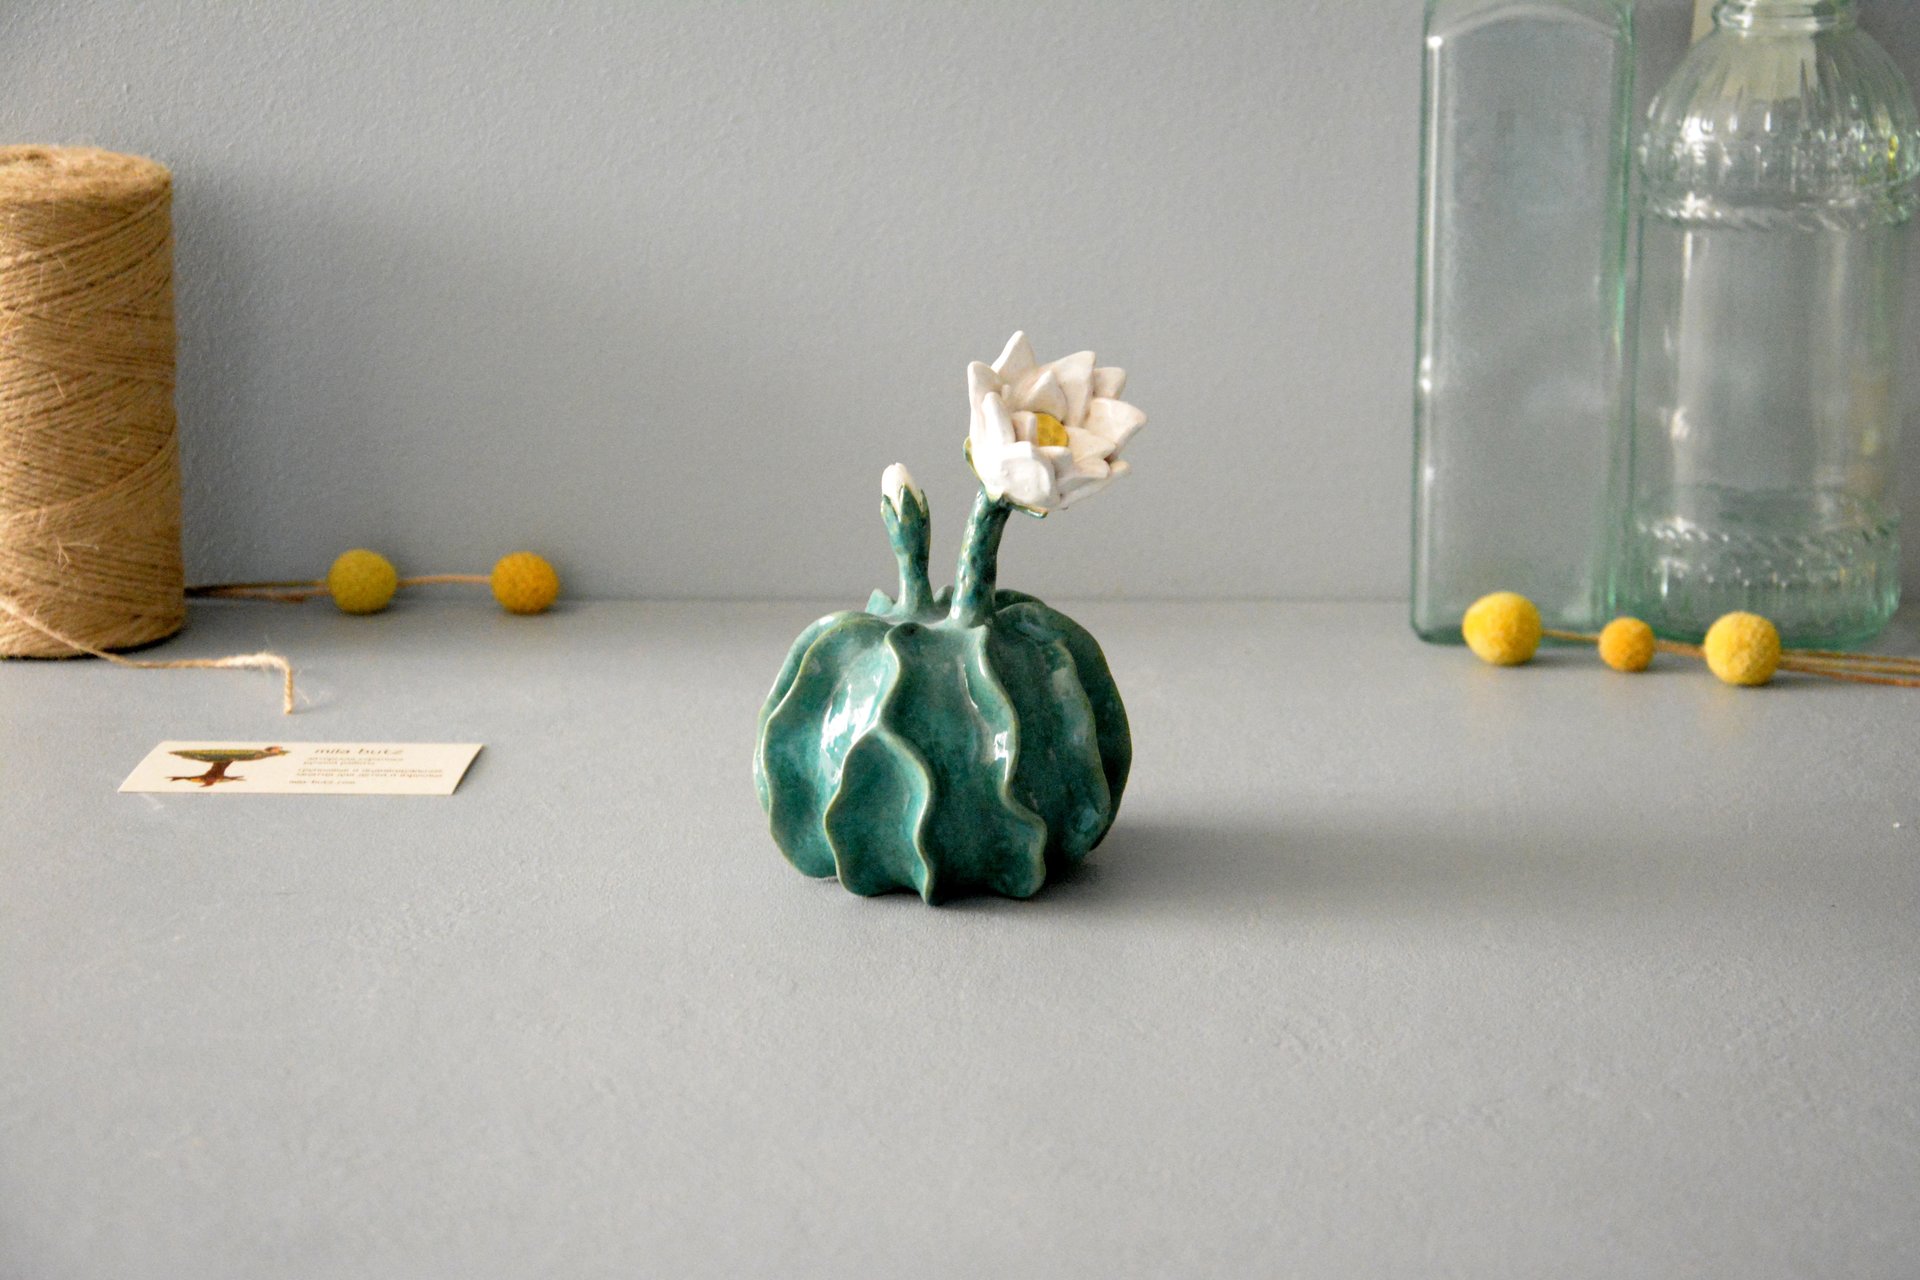 Ceramic Notocactus ottonis - Cactus ceramic, height - 12 cm, photo 1 of 6.